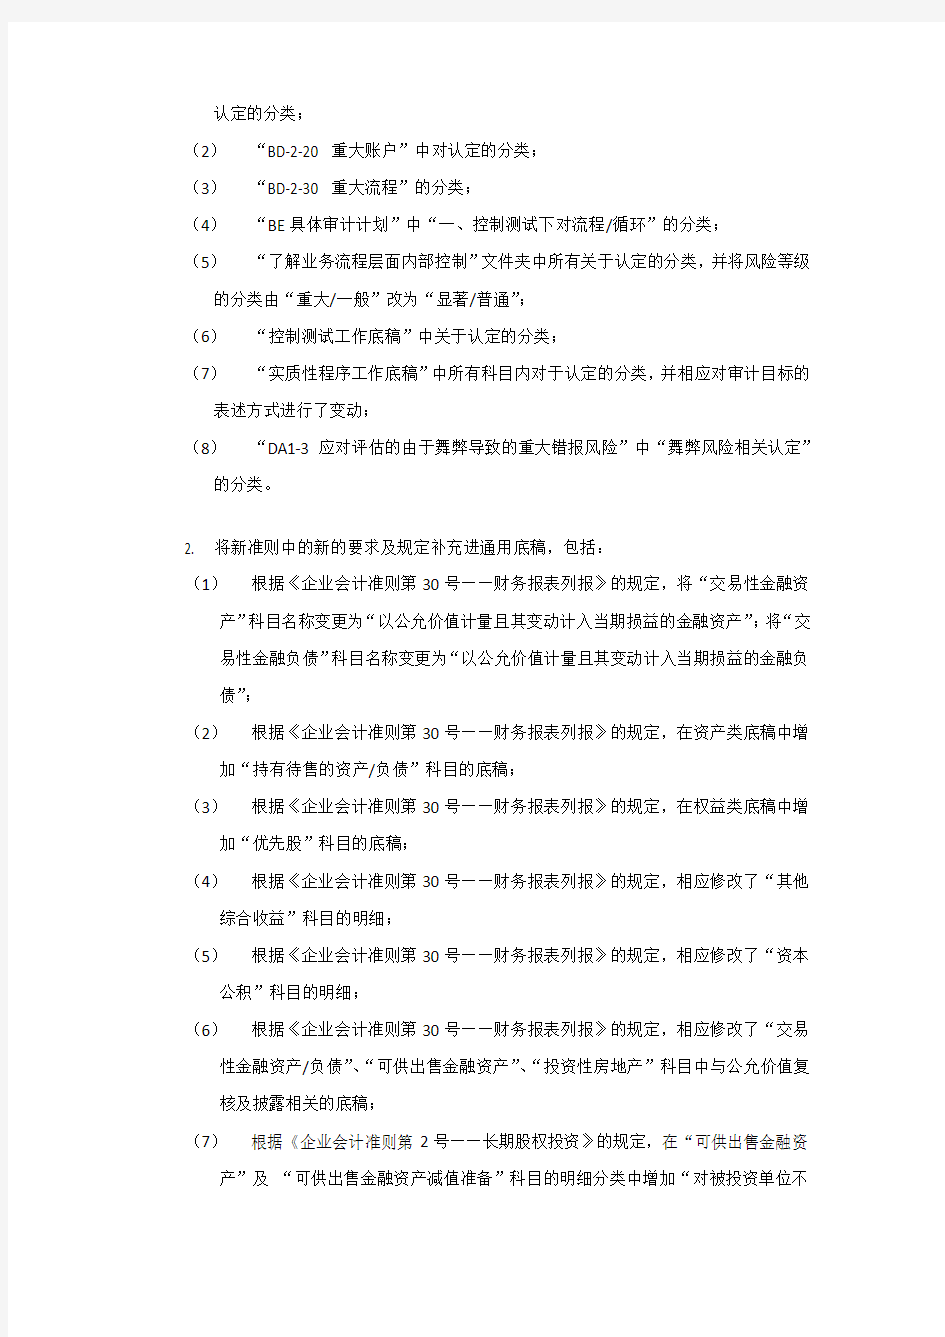 2._财务报表审计通用工作底稿修订说明(201409)